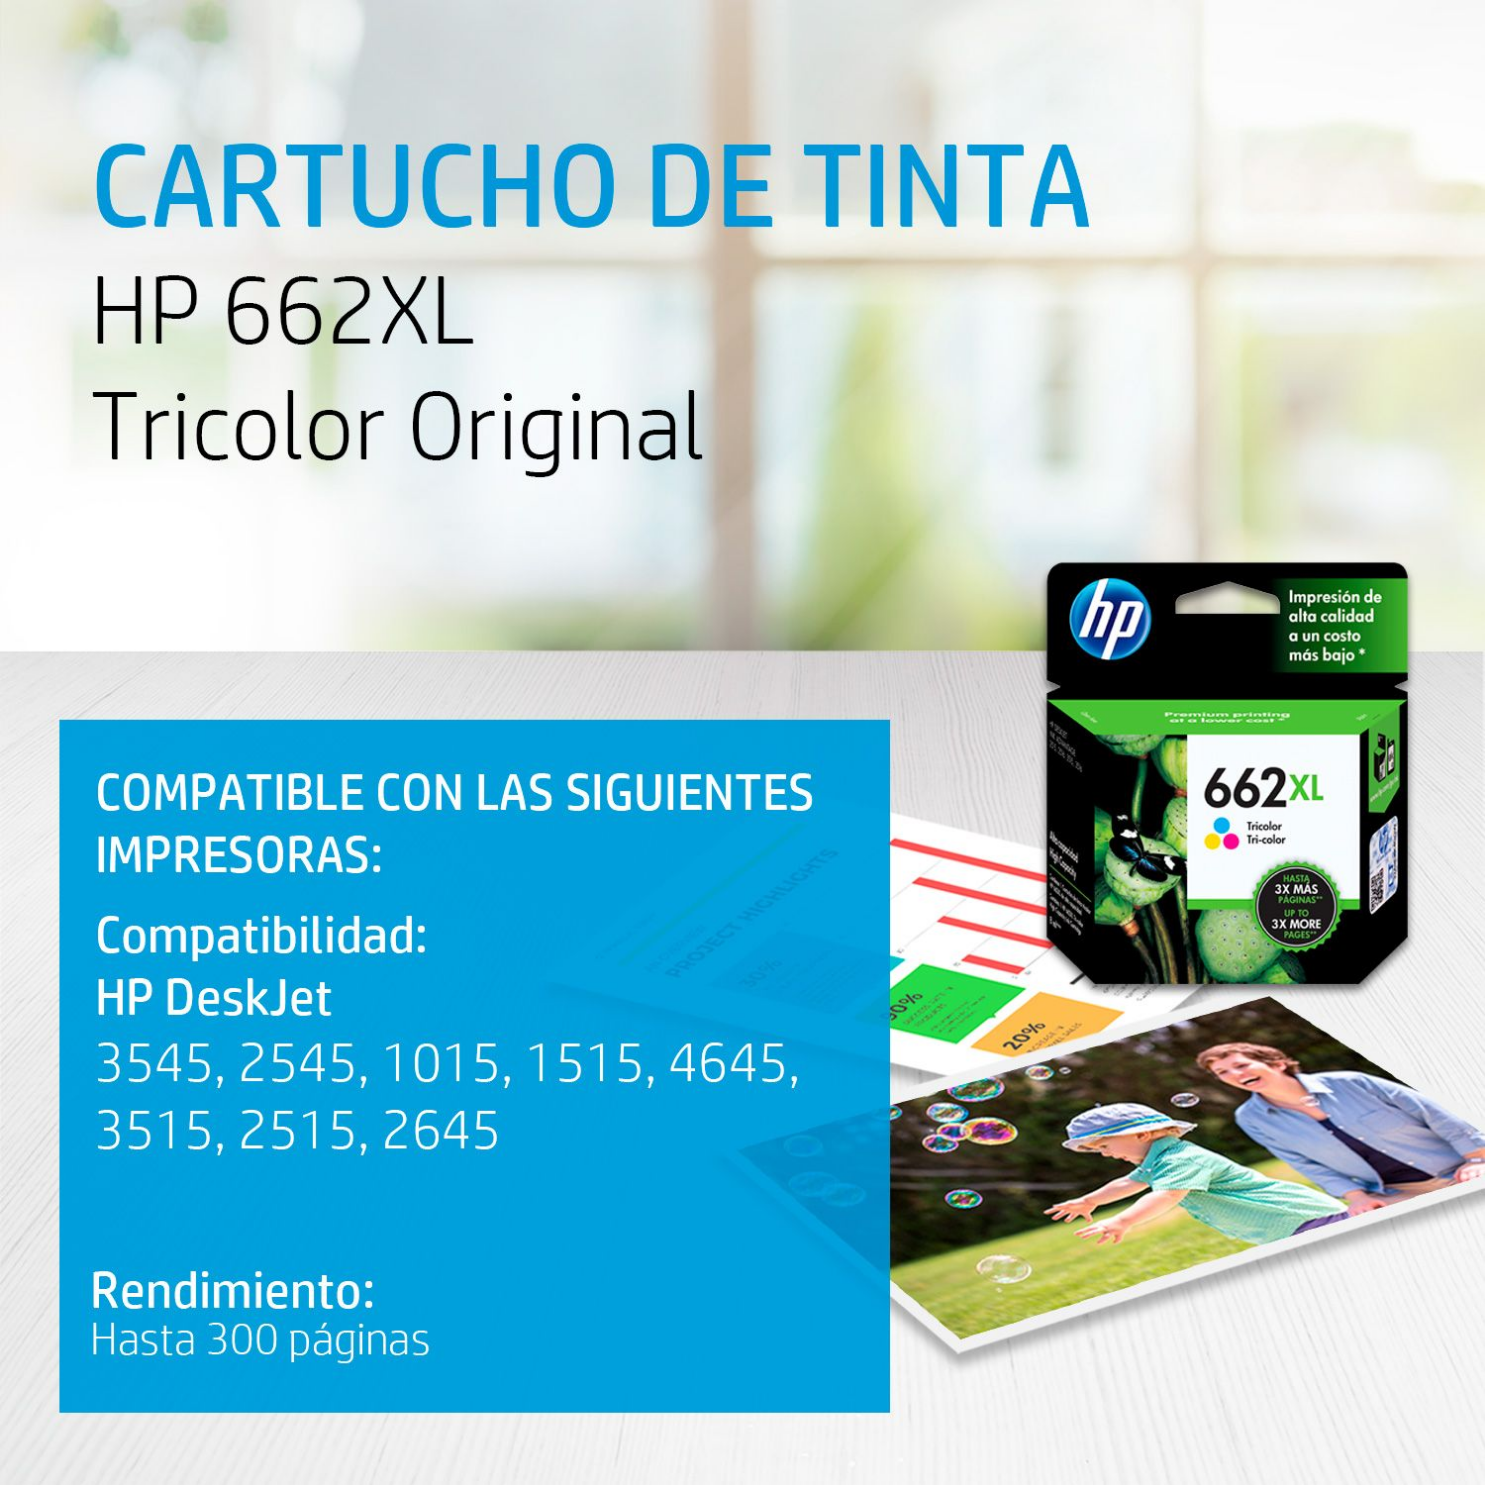 Cartucho de tinta HP 662XL Tricolor (CZ106AL) DeskJet 2515, 3515, 300 Pag.